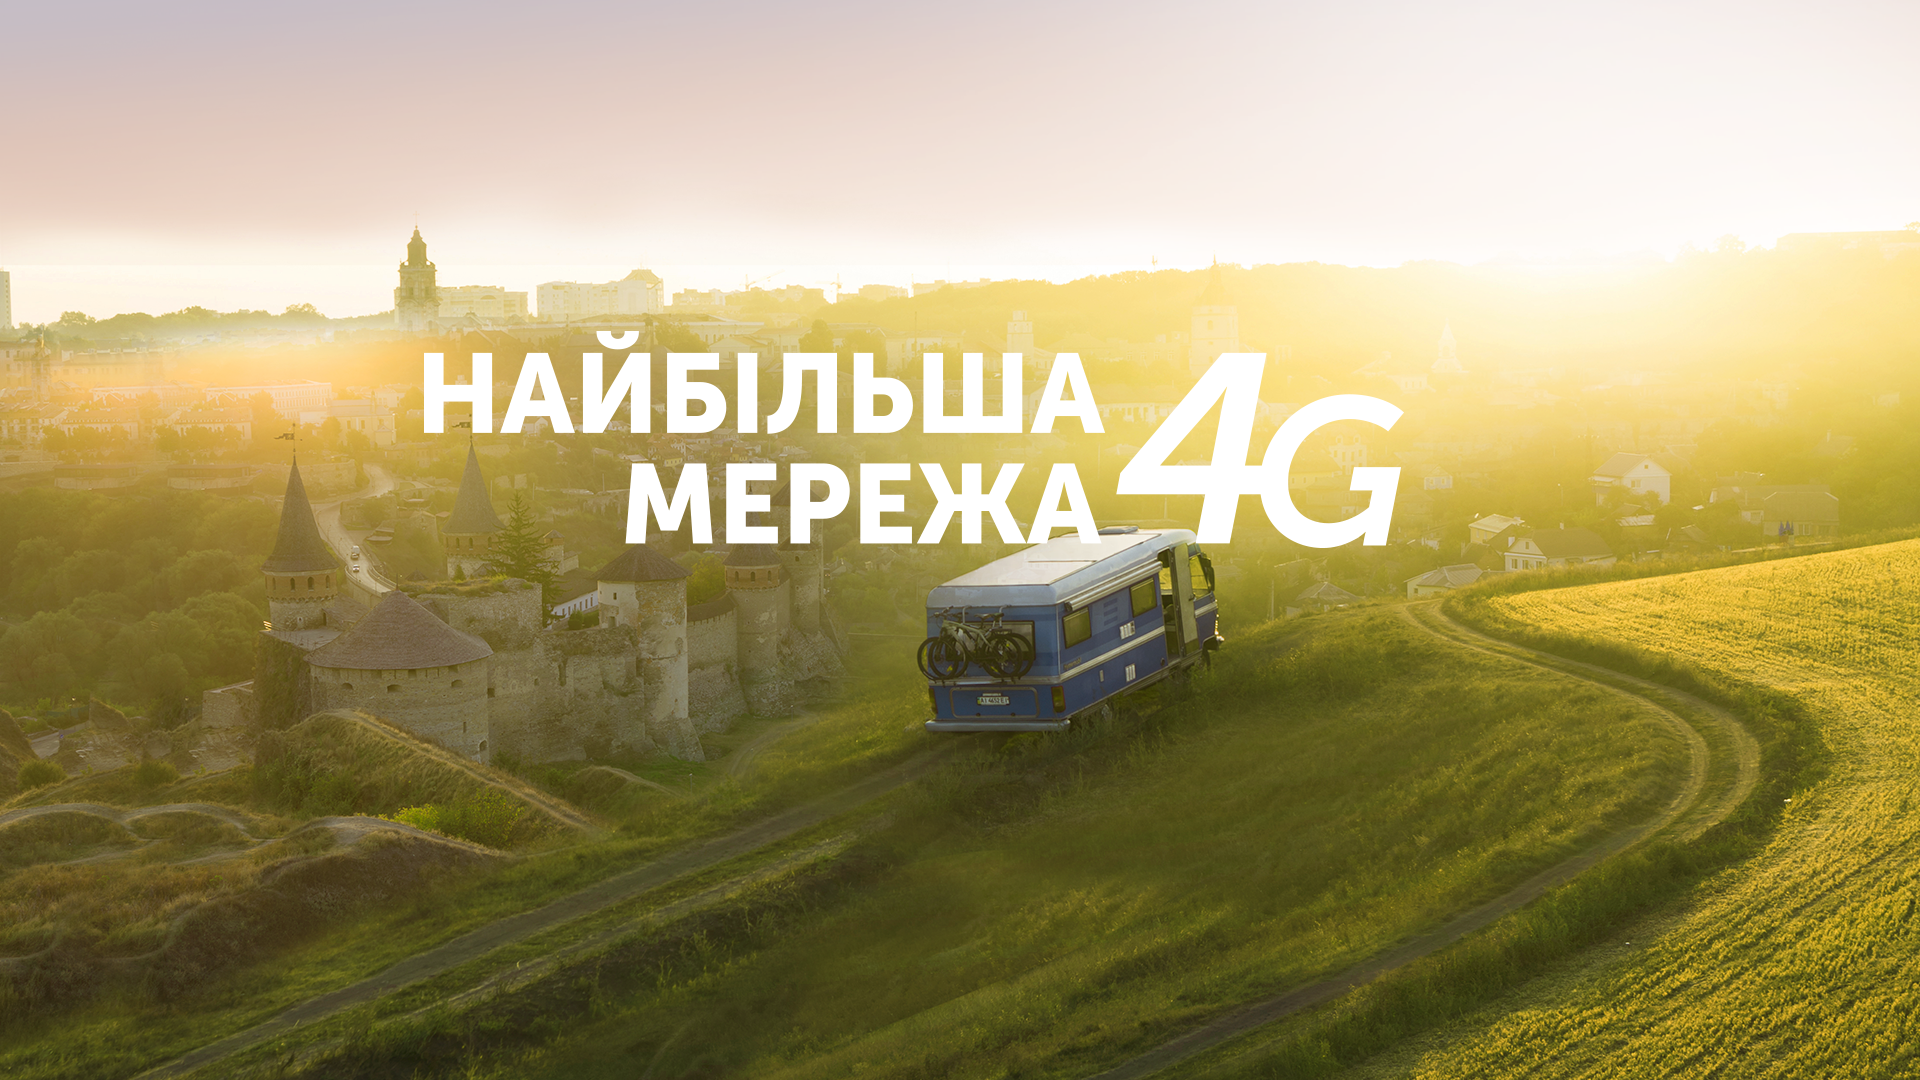 Киевстар обеспечил 4G интернет на 93% территории Днепропетровской области